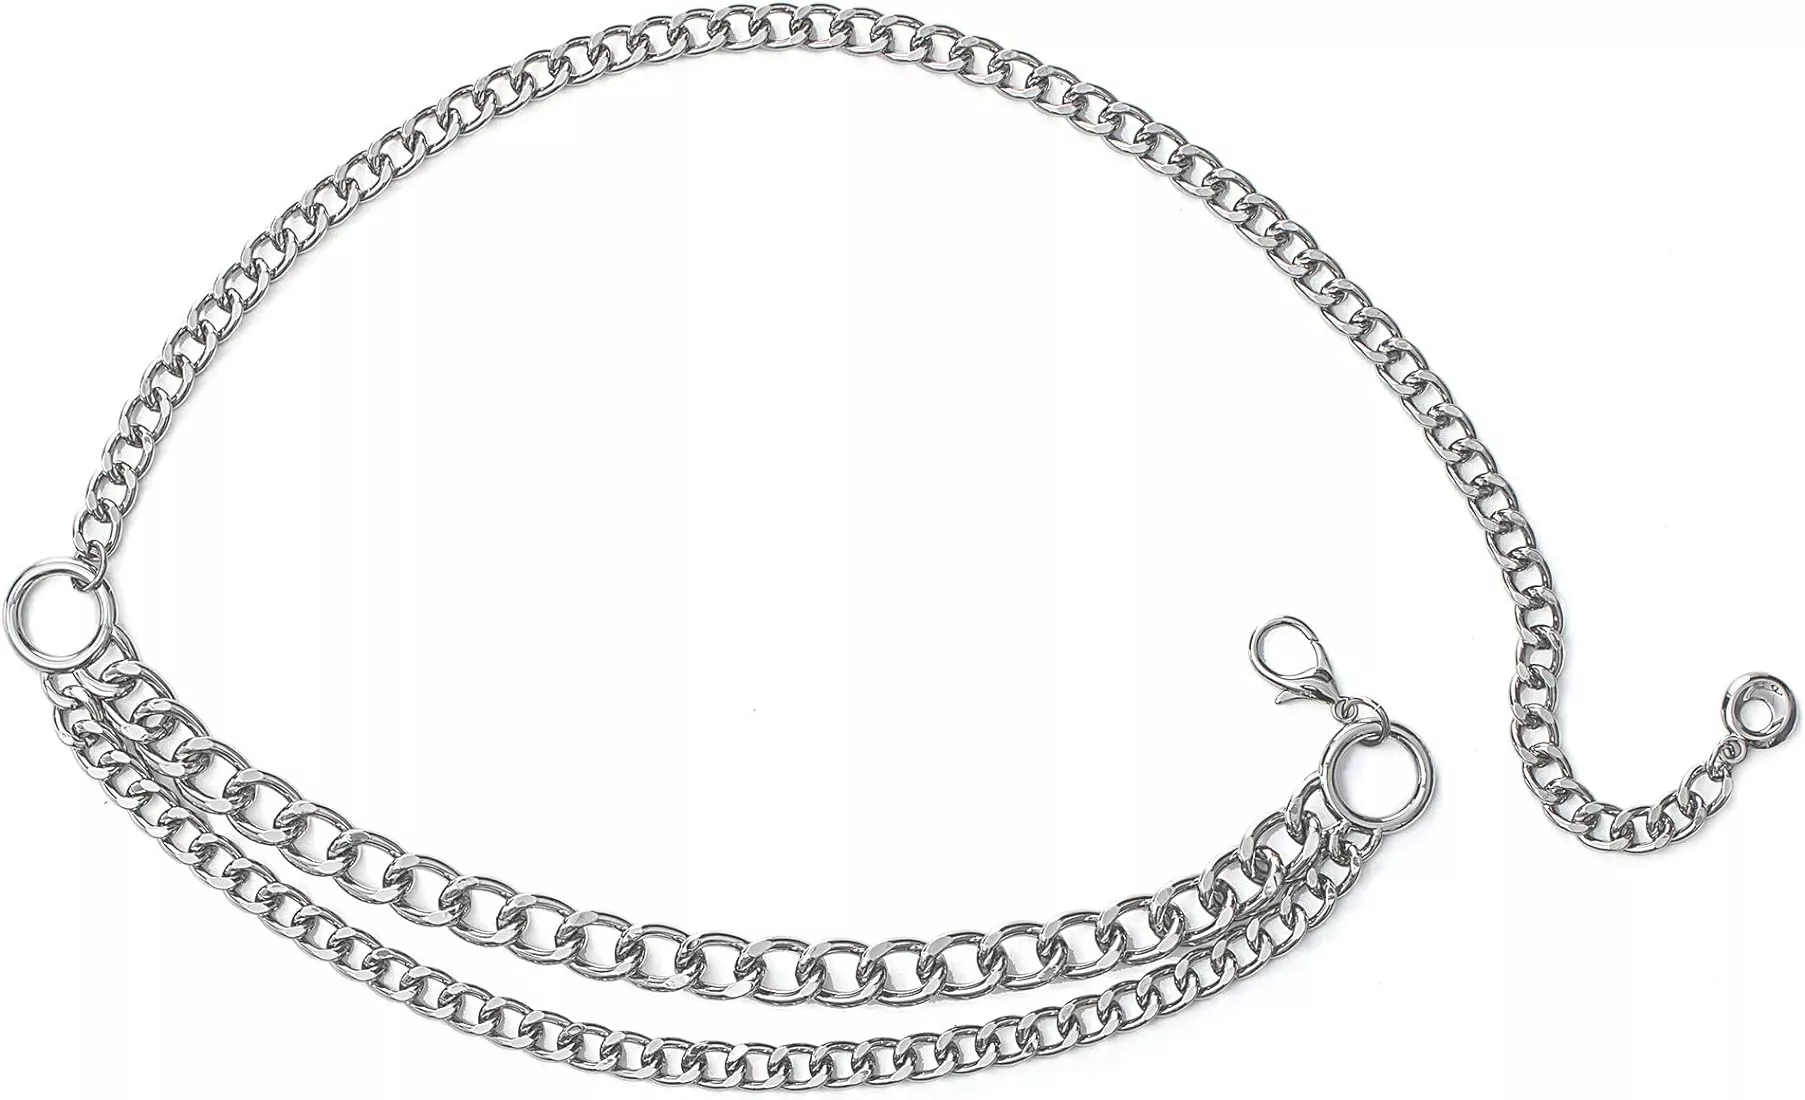 fan&louis gold waist chain belt for women